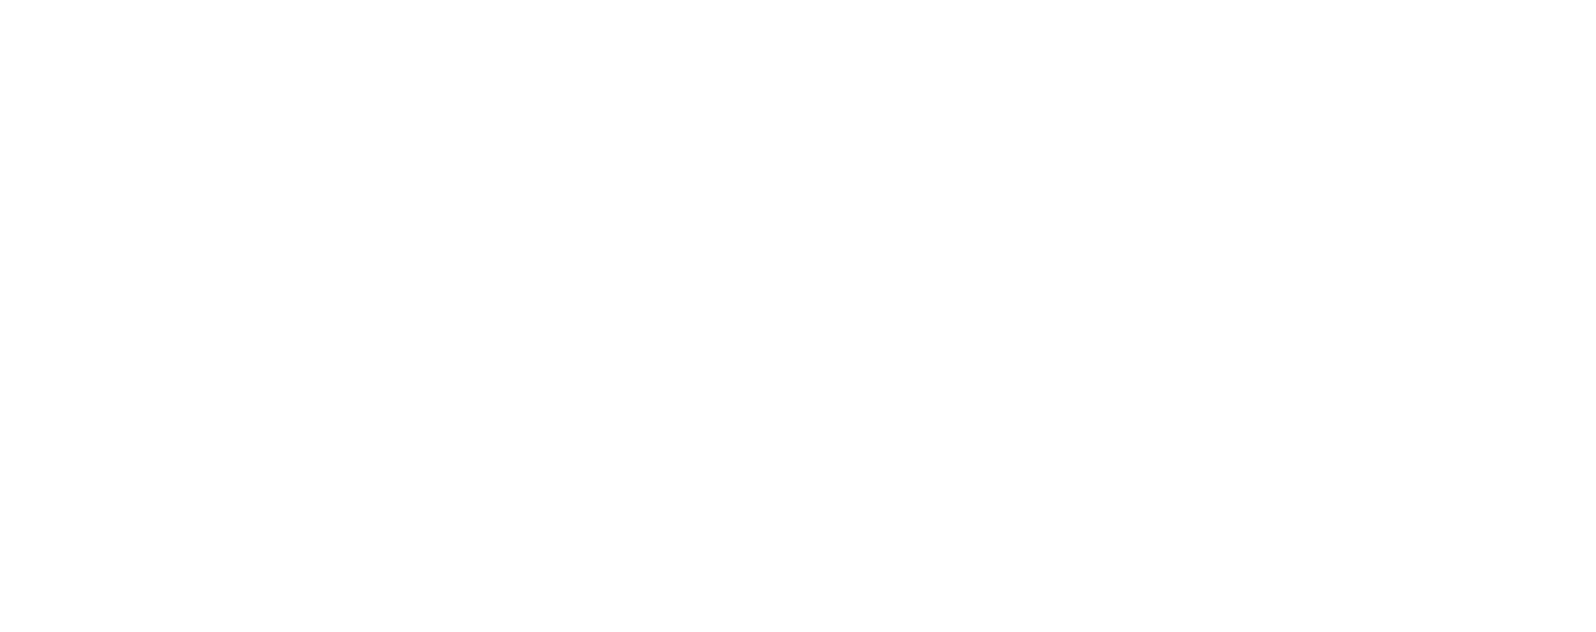 CVRx logo grand pour les fonds sombres (PNG transparent)